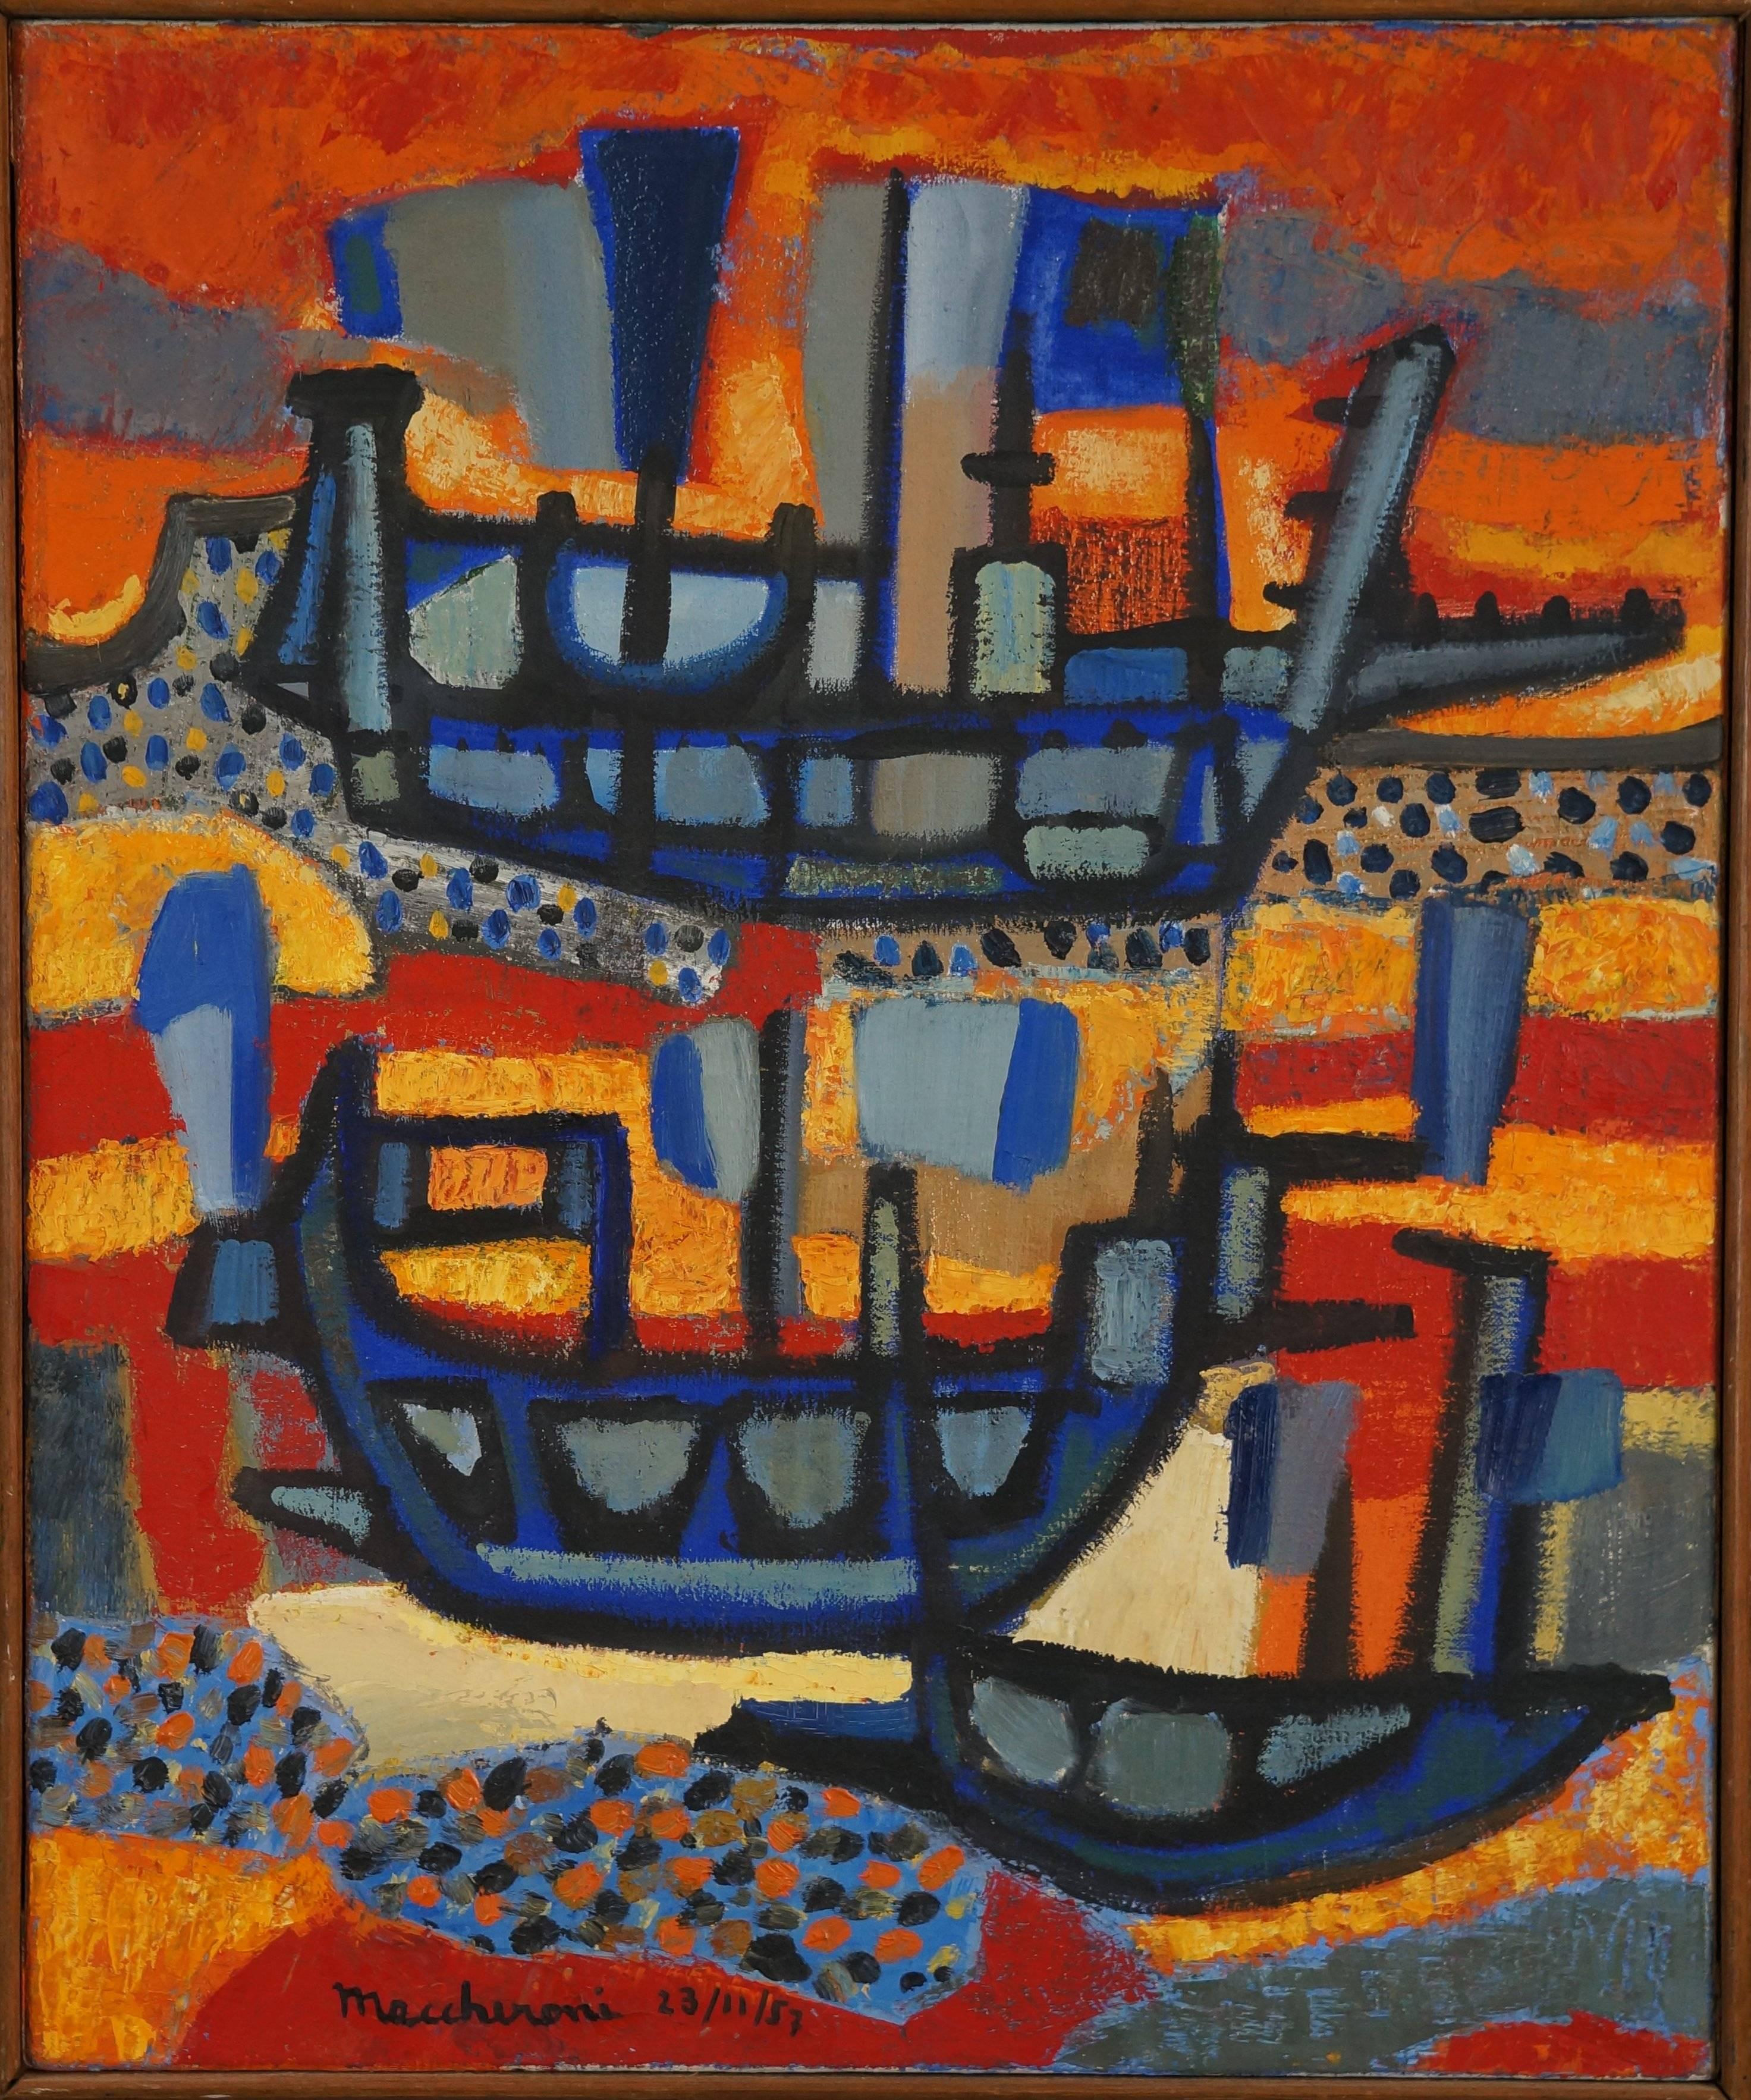 Abstract Painting Henri Maccheroni - Composition abstraite M1, 1957, peinture à l'huile, 85 x61 cm, encadrée